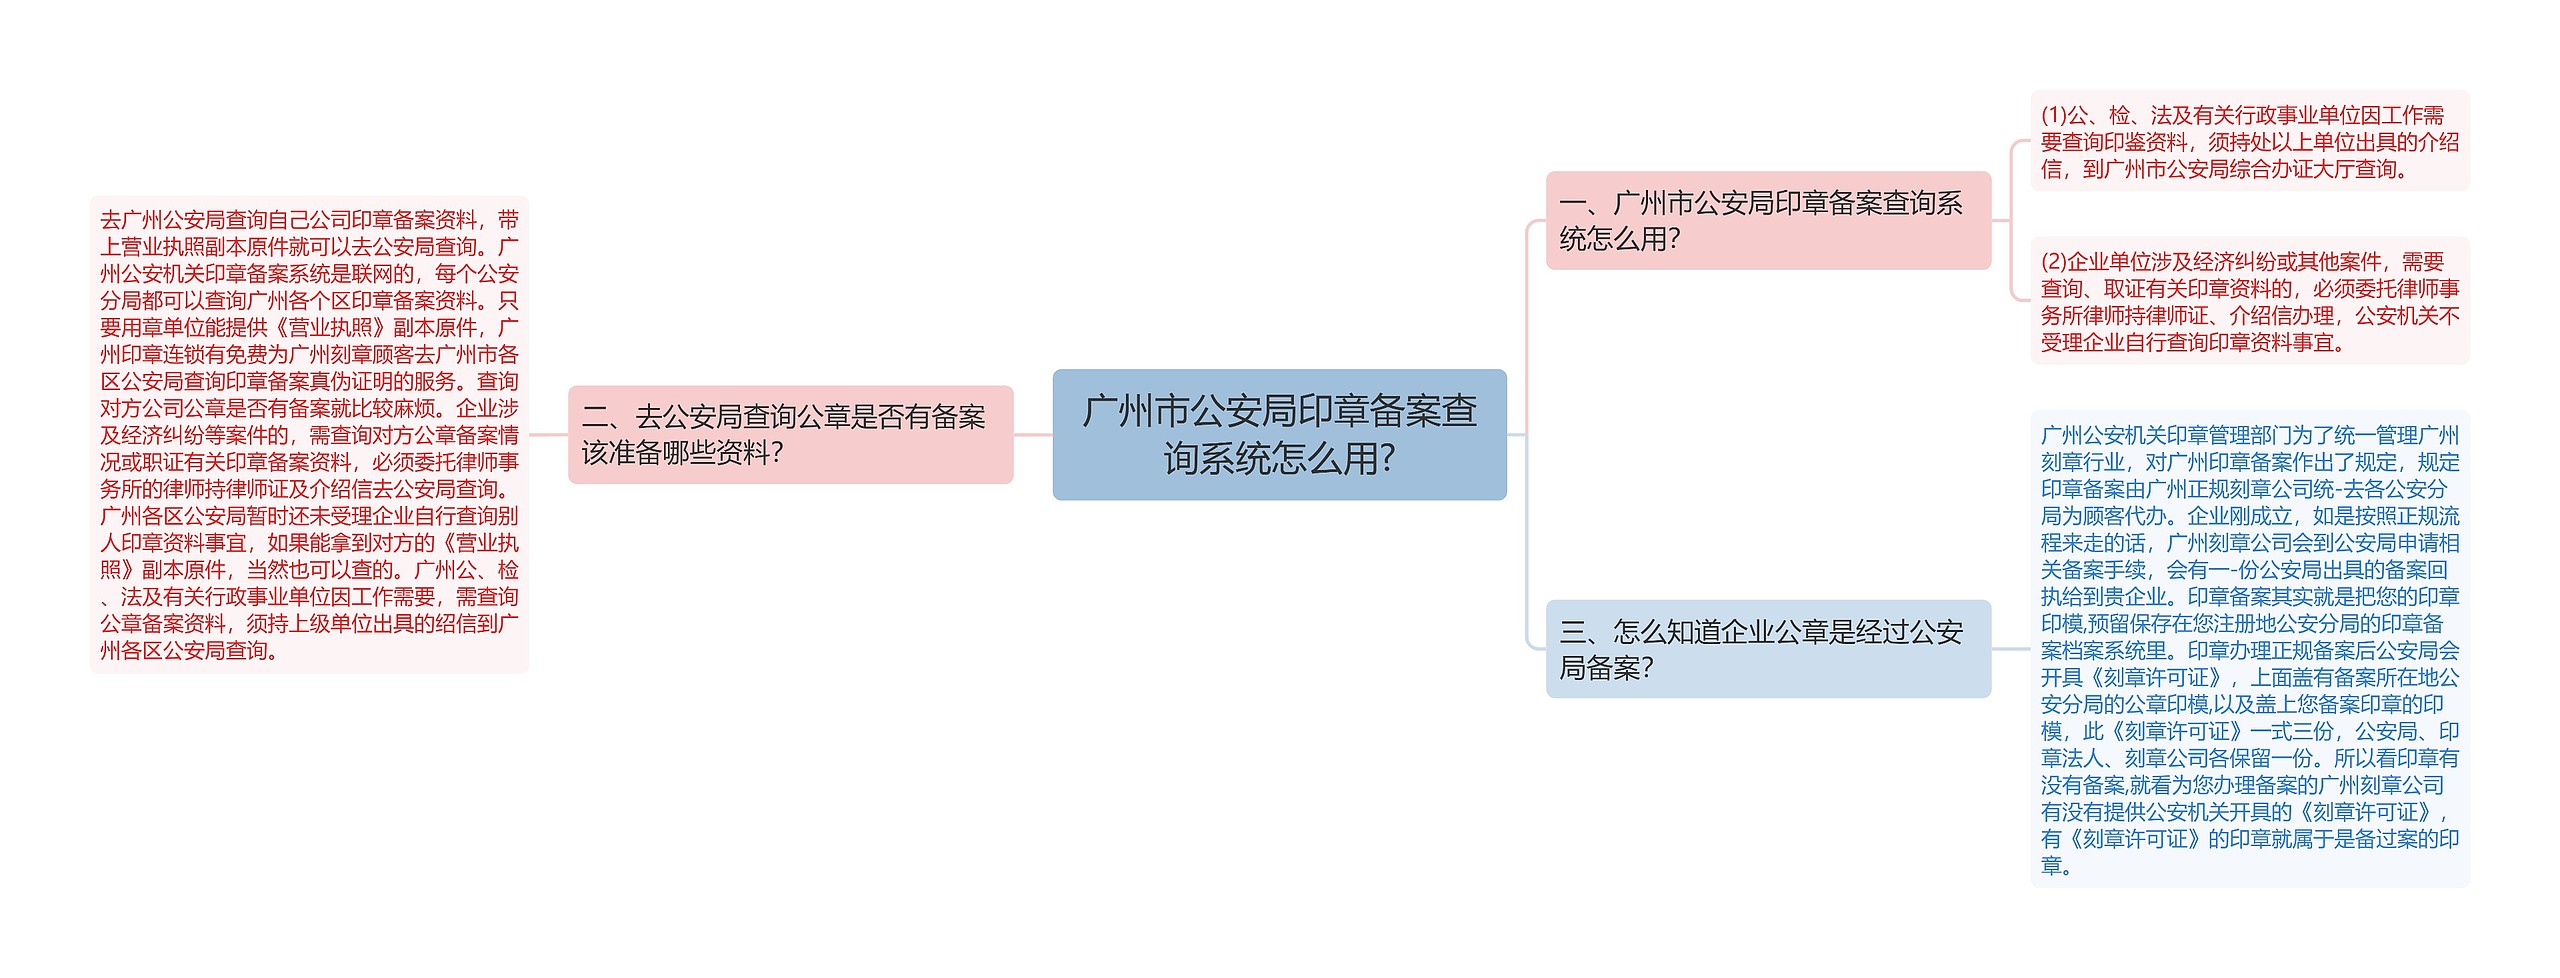 广州市公安局印章备案查询系统怎么用?思维导图